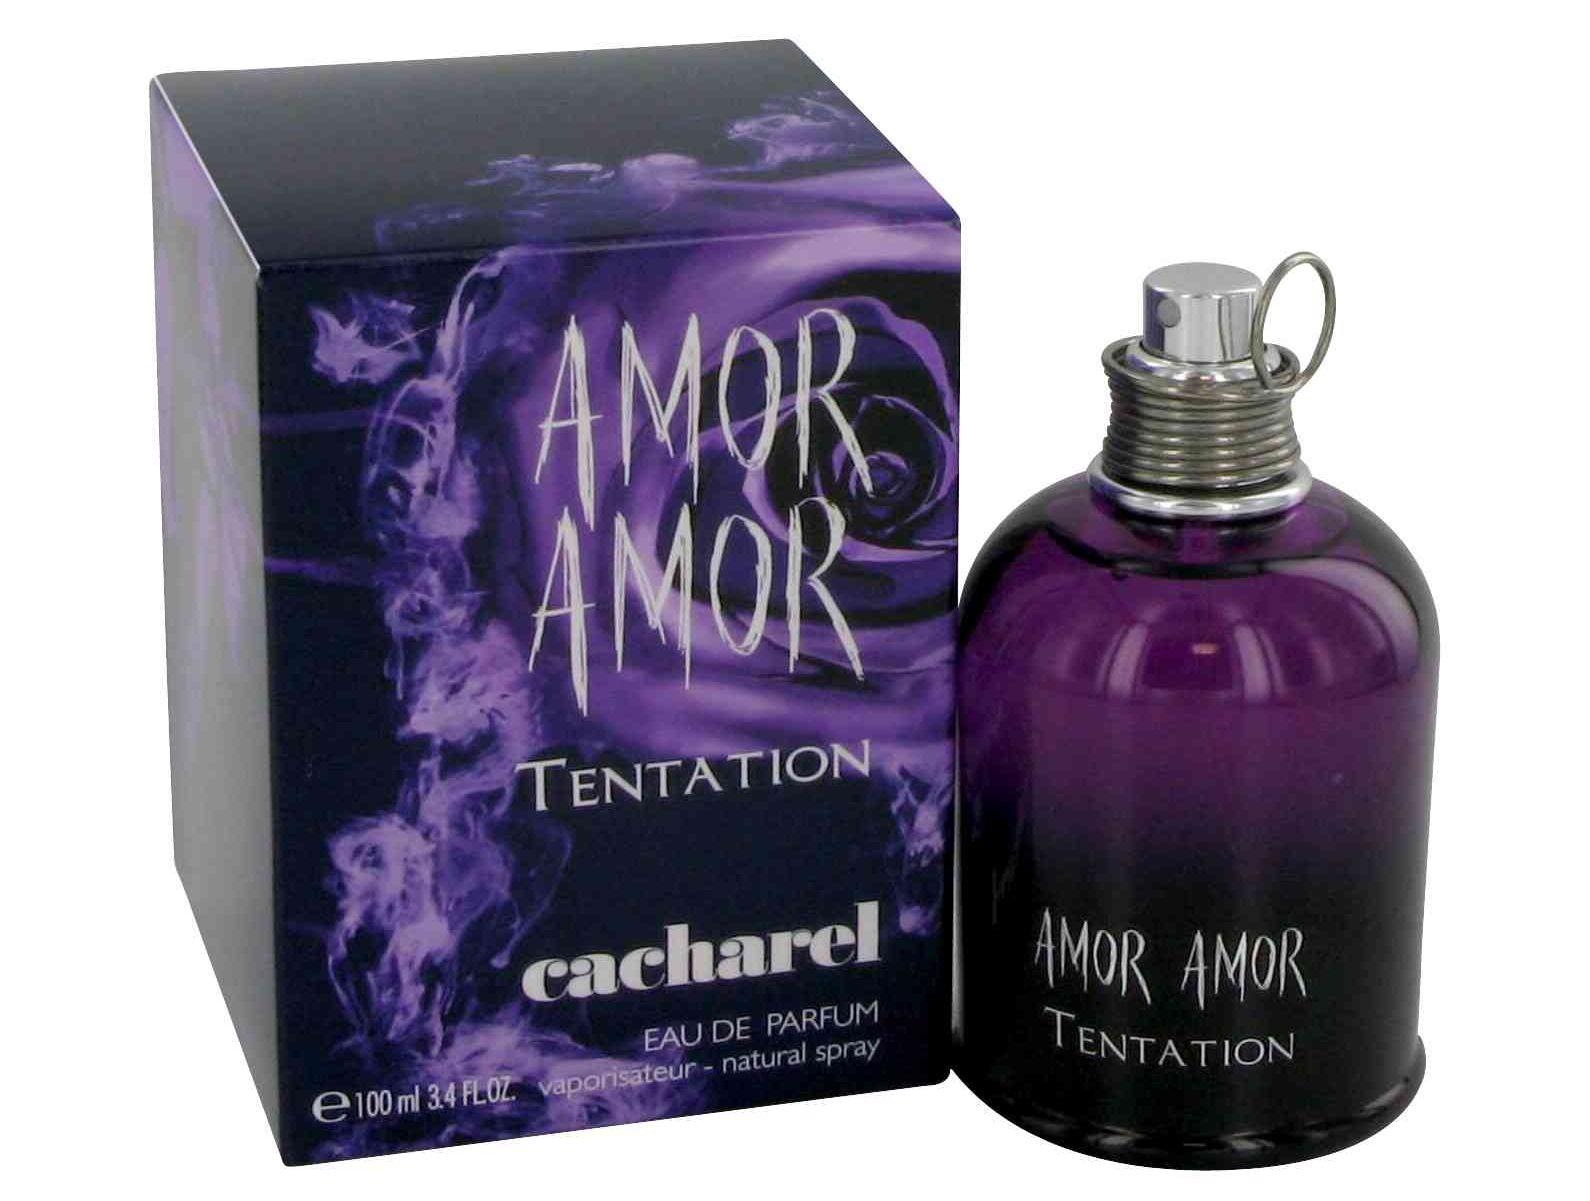 Foto Amor Tentation Cacharel eau de parfum para mujer vaporizador 50 ml